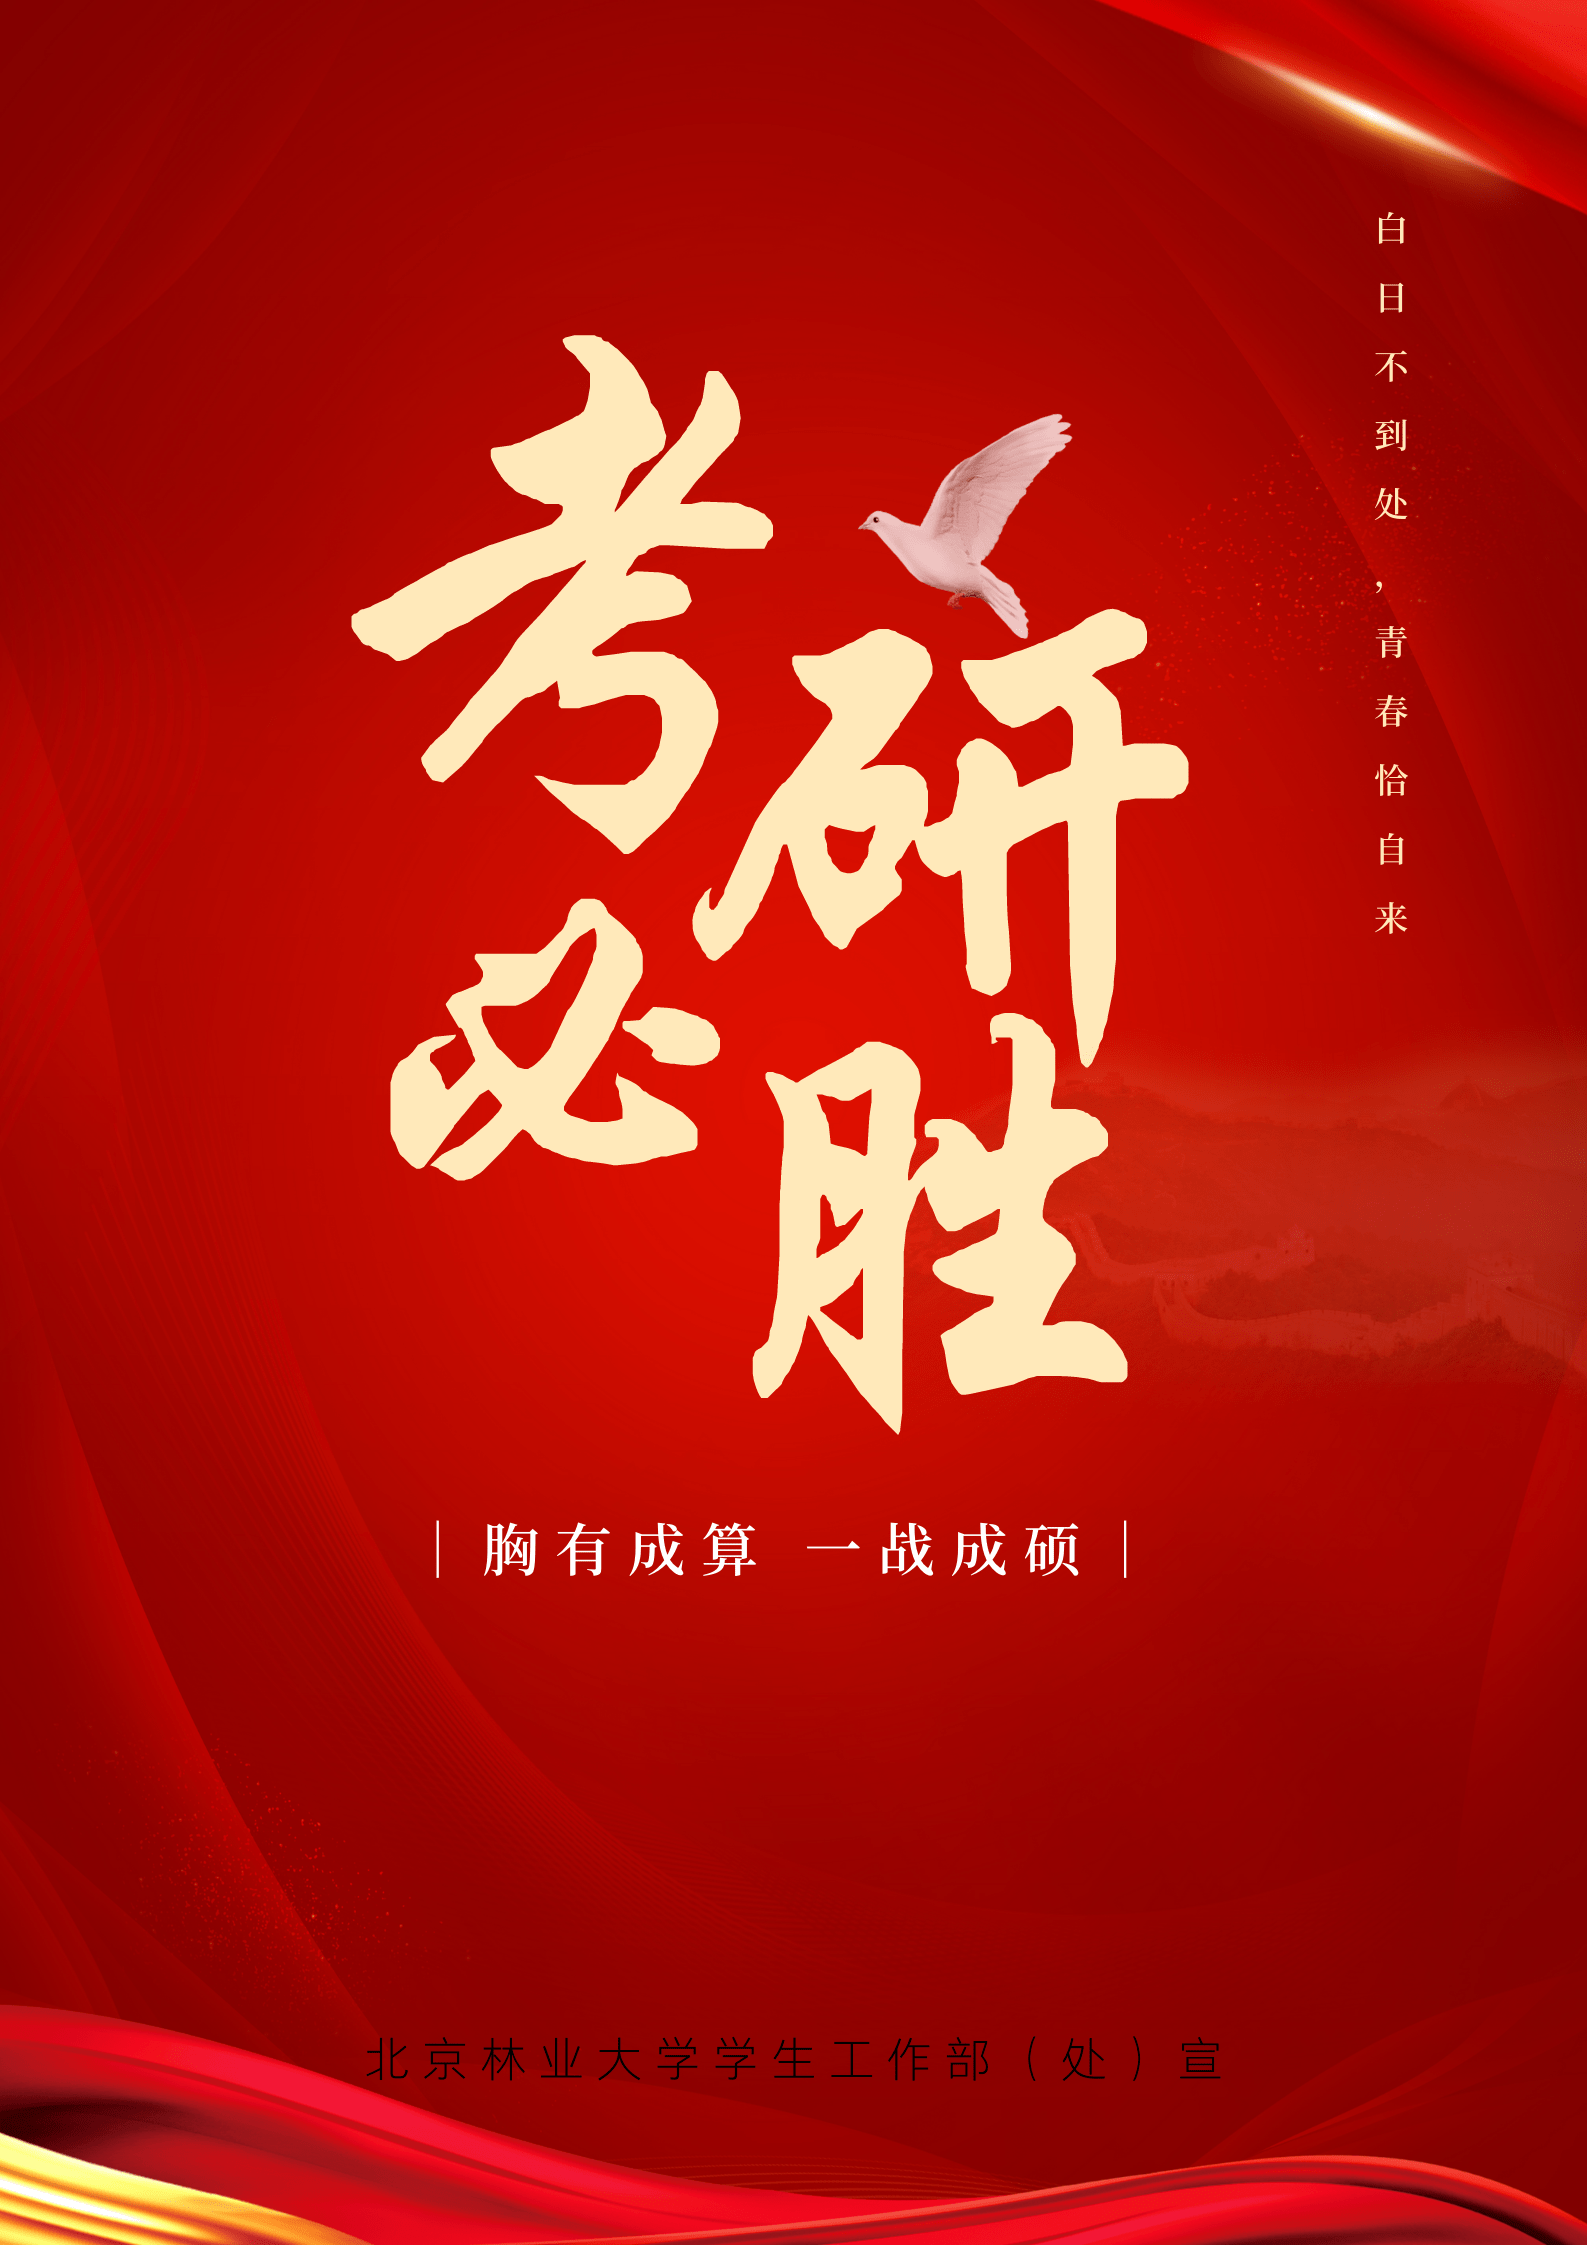 北京林业大学学生处祝各位学子旗开得胜,一战成硕!